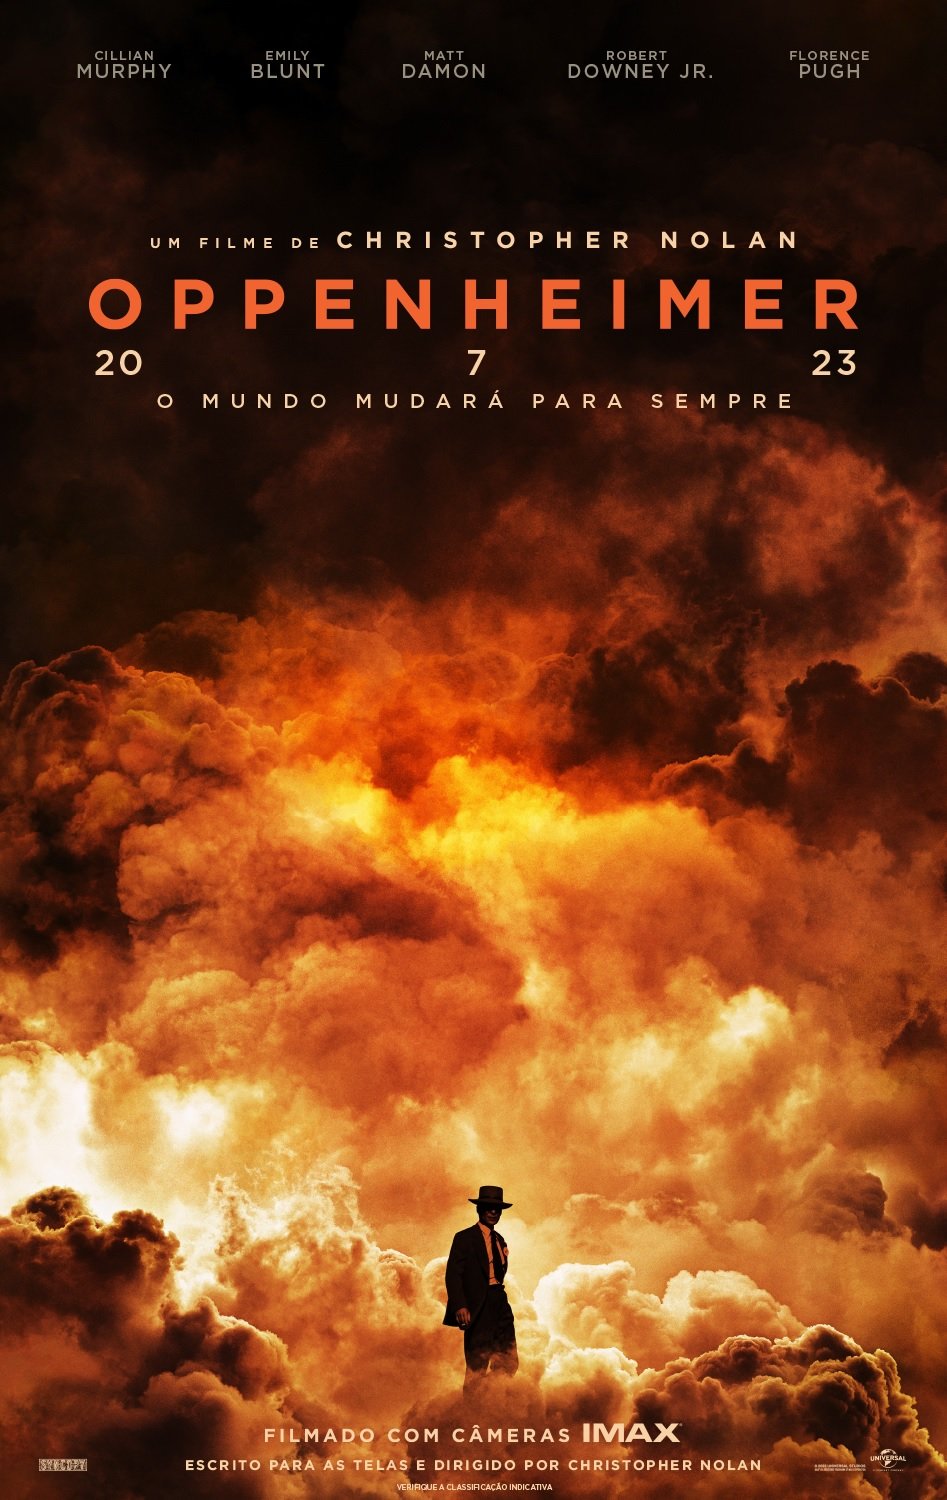 Oppenheimer Cillian Murphy é o “pai da bomba atômica” em novo filme de